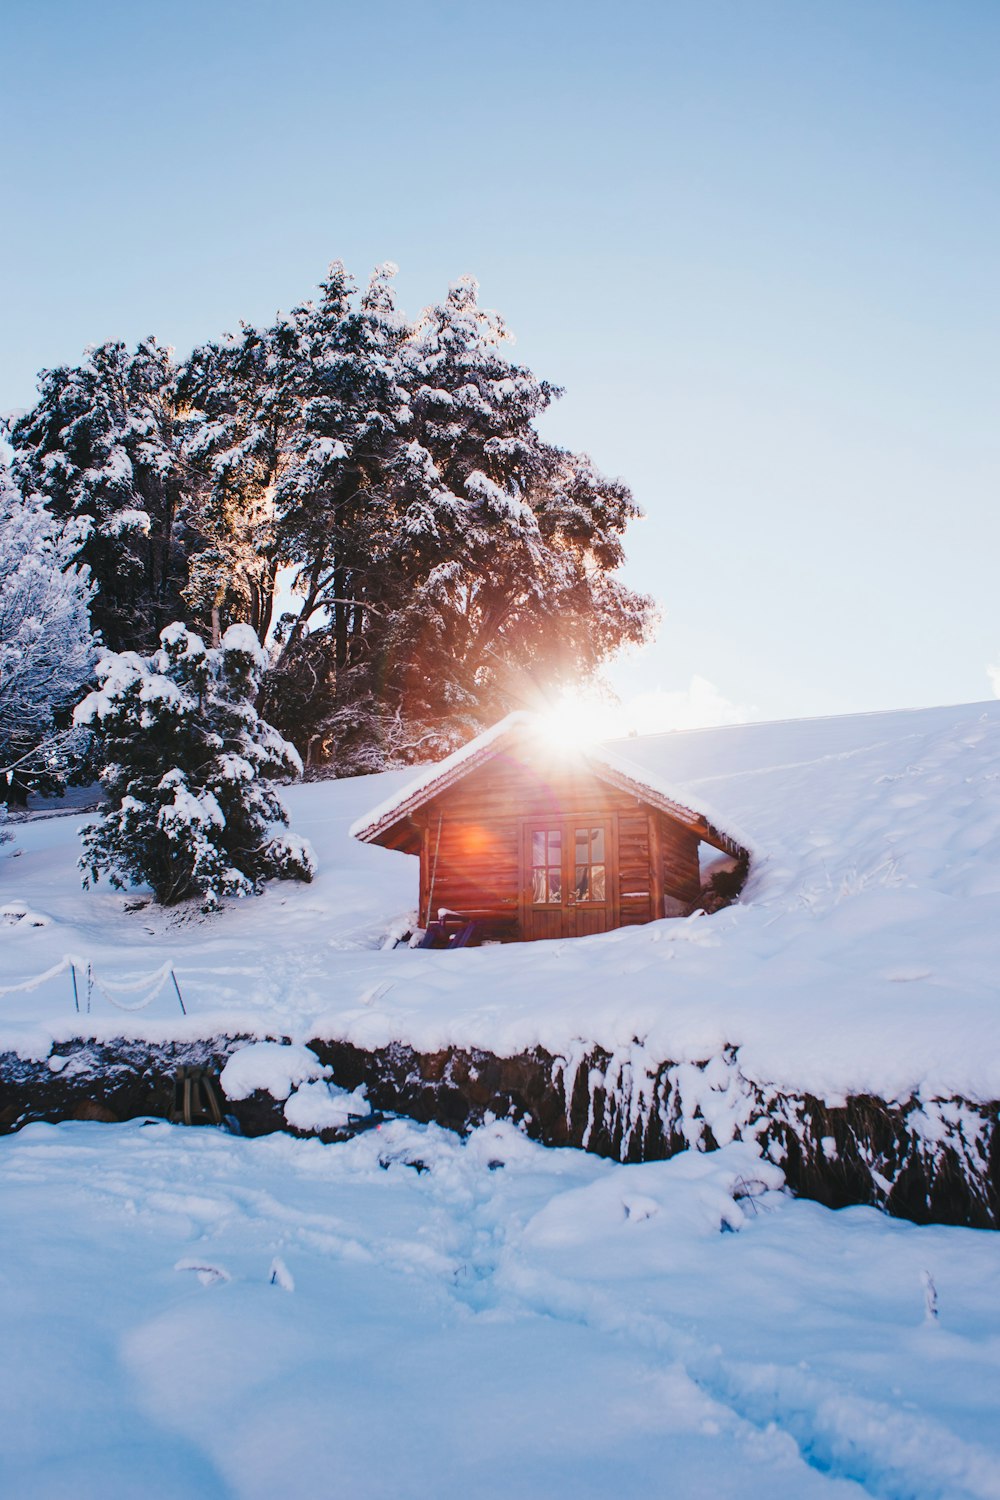 Landschaftsfoto des mit Schnee bedeckten Hauses